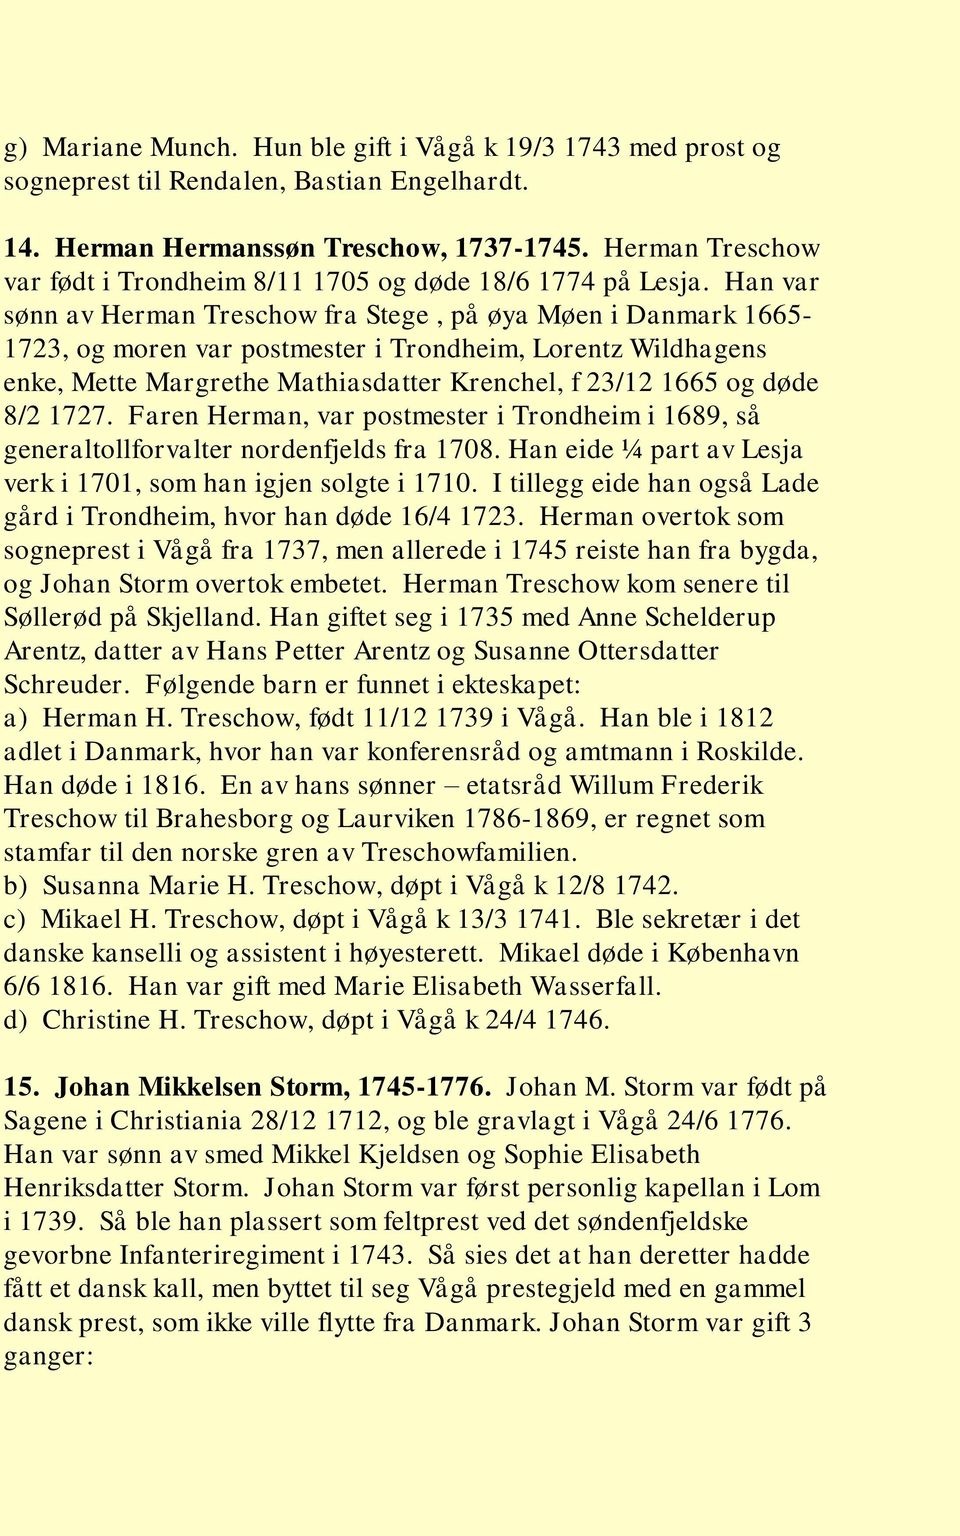 Han var sønn av Herman Treschow fra Stege, på øya Møen i Danmark 1665-1723, og moren var postmester i Trondheim, Lorentz Wildhagens enke, Mette Margrethe Mathiasdatter Krenchel, f 23/12 1665 og døde